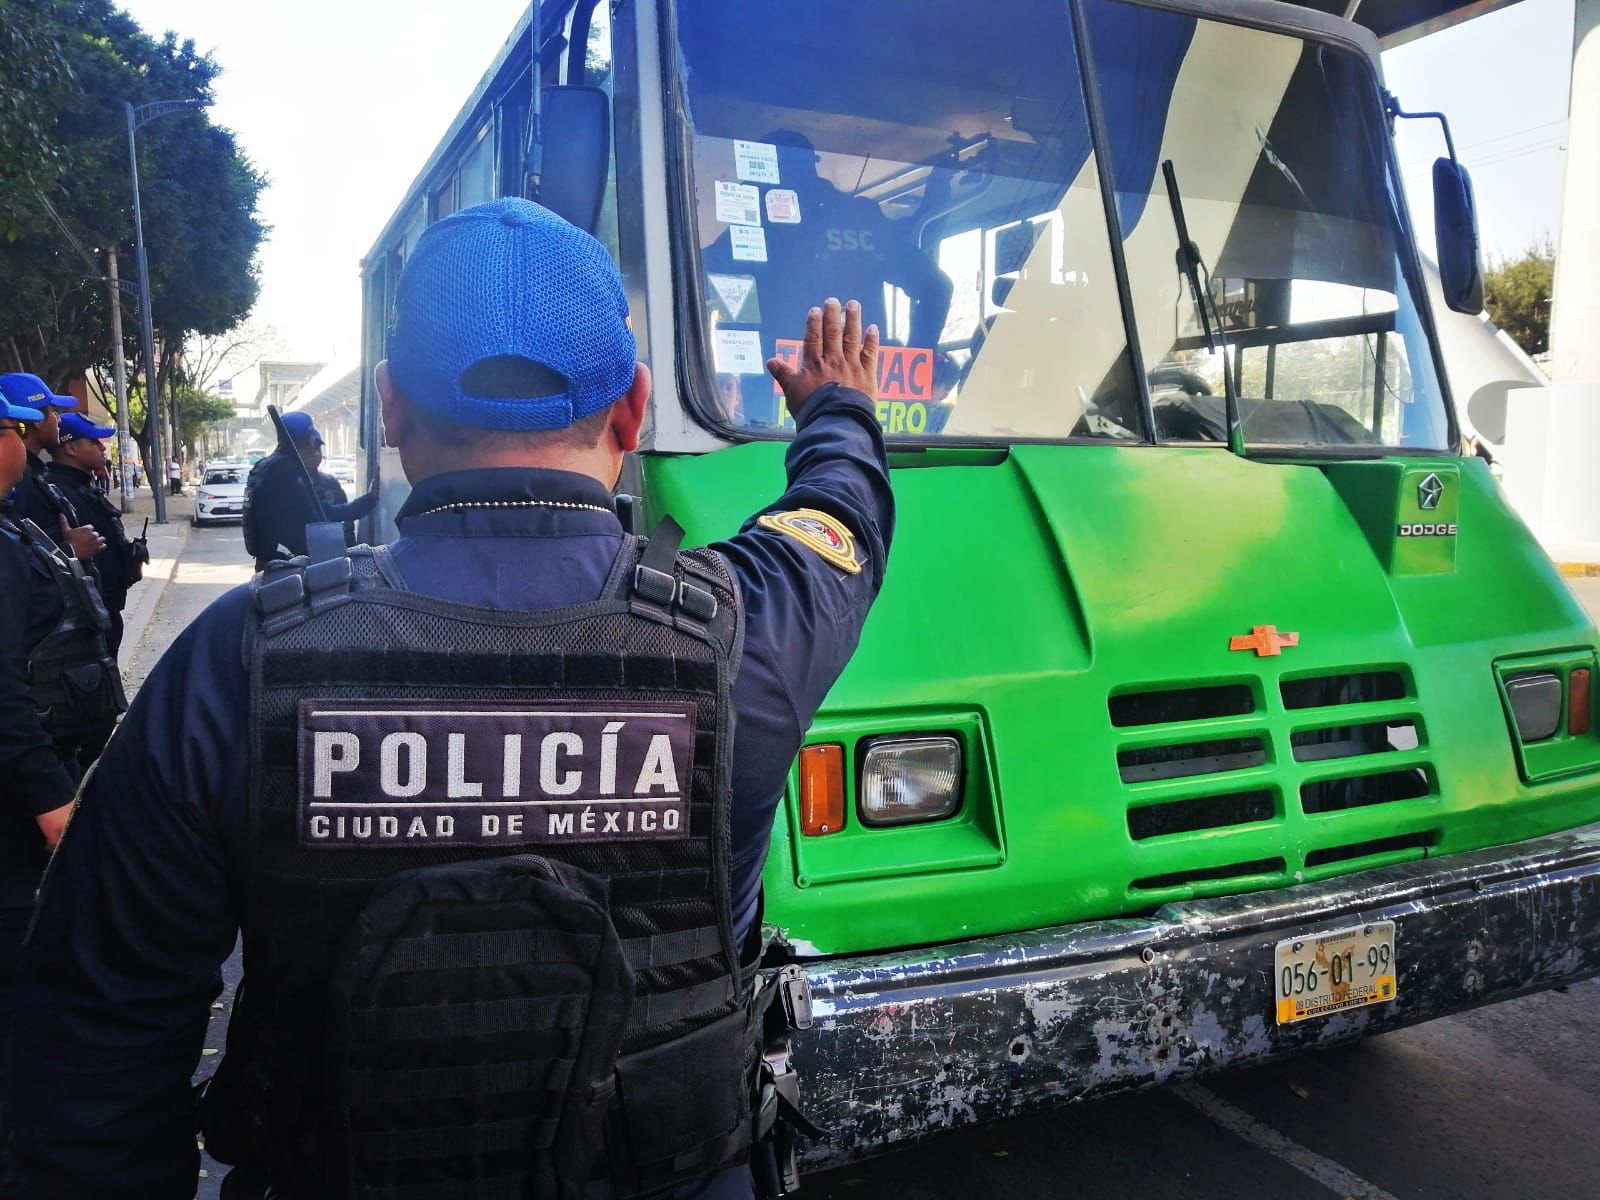 En Tláhuac, operativo ‘Pasajero Seguro’ baja incidencia delictiva